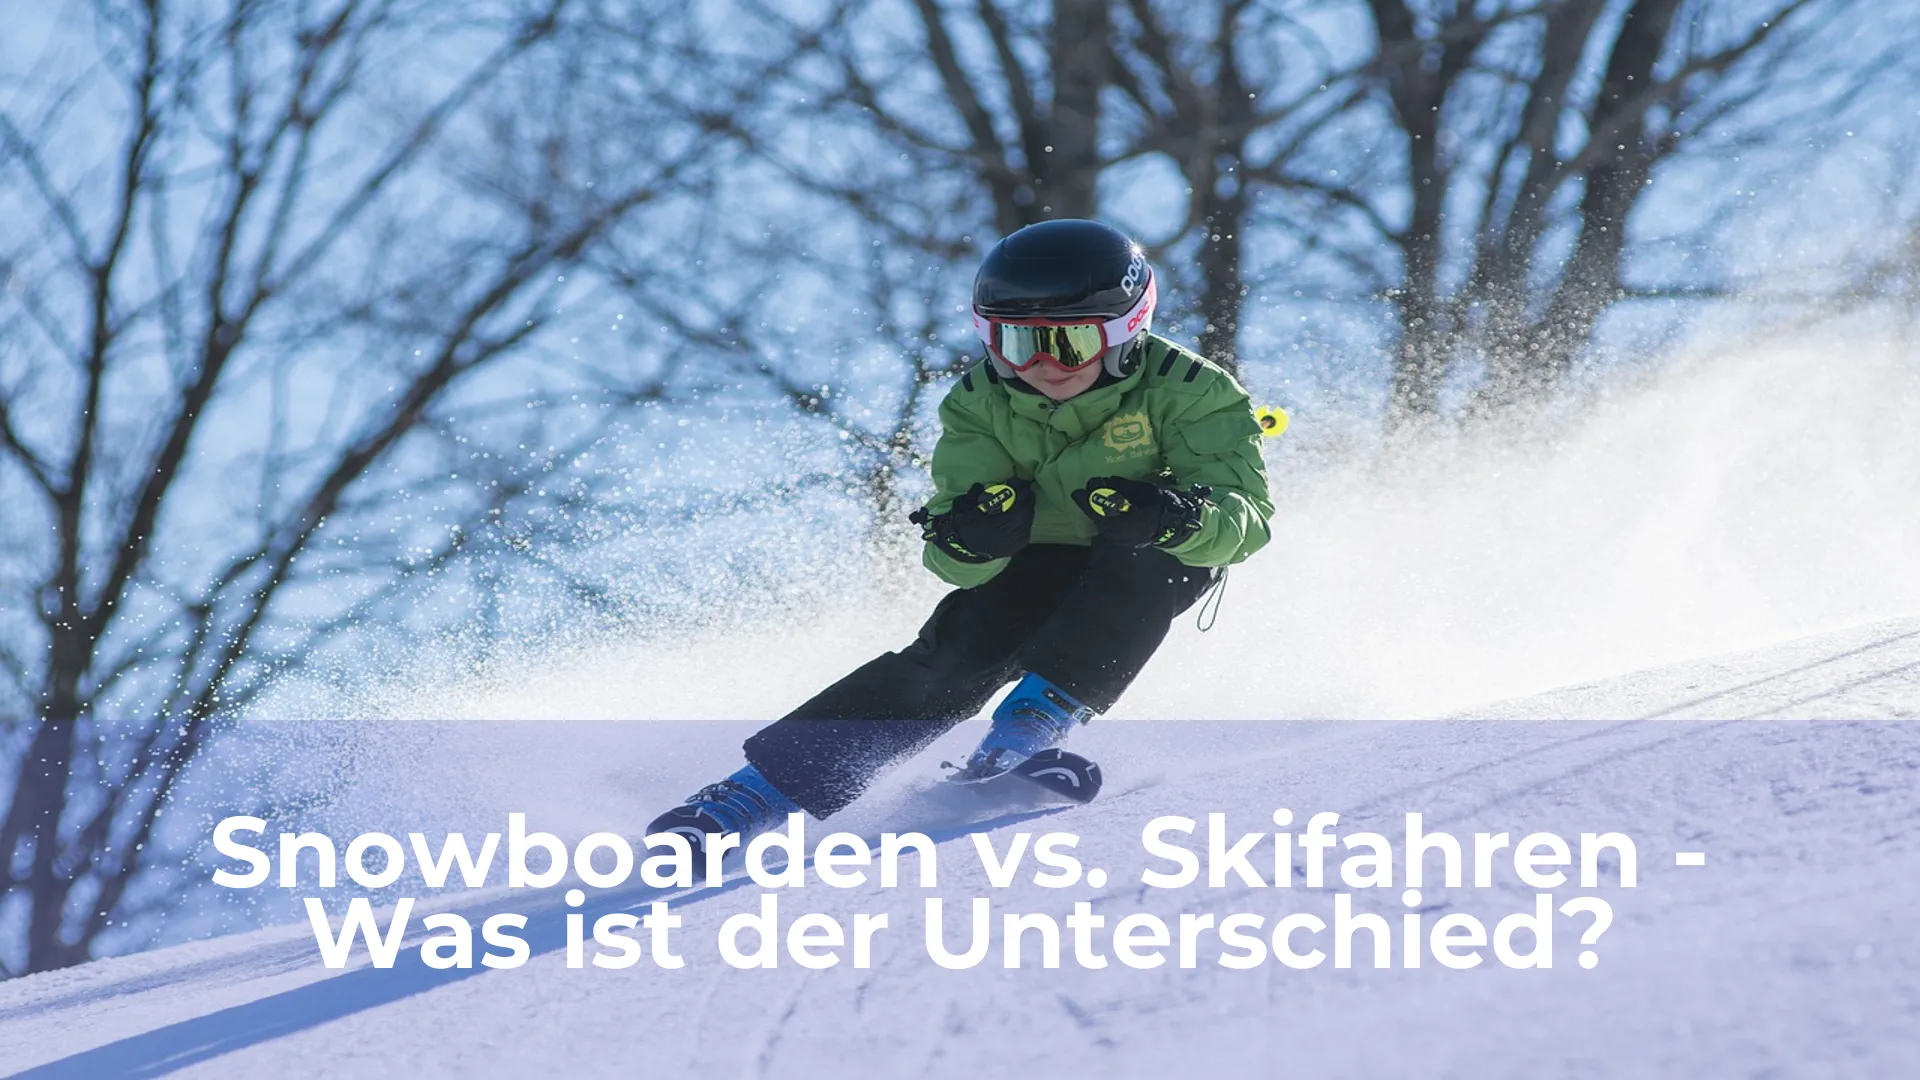 Snowboarden vs skifahren was ist der unterschied